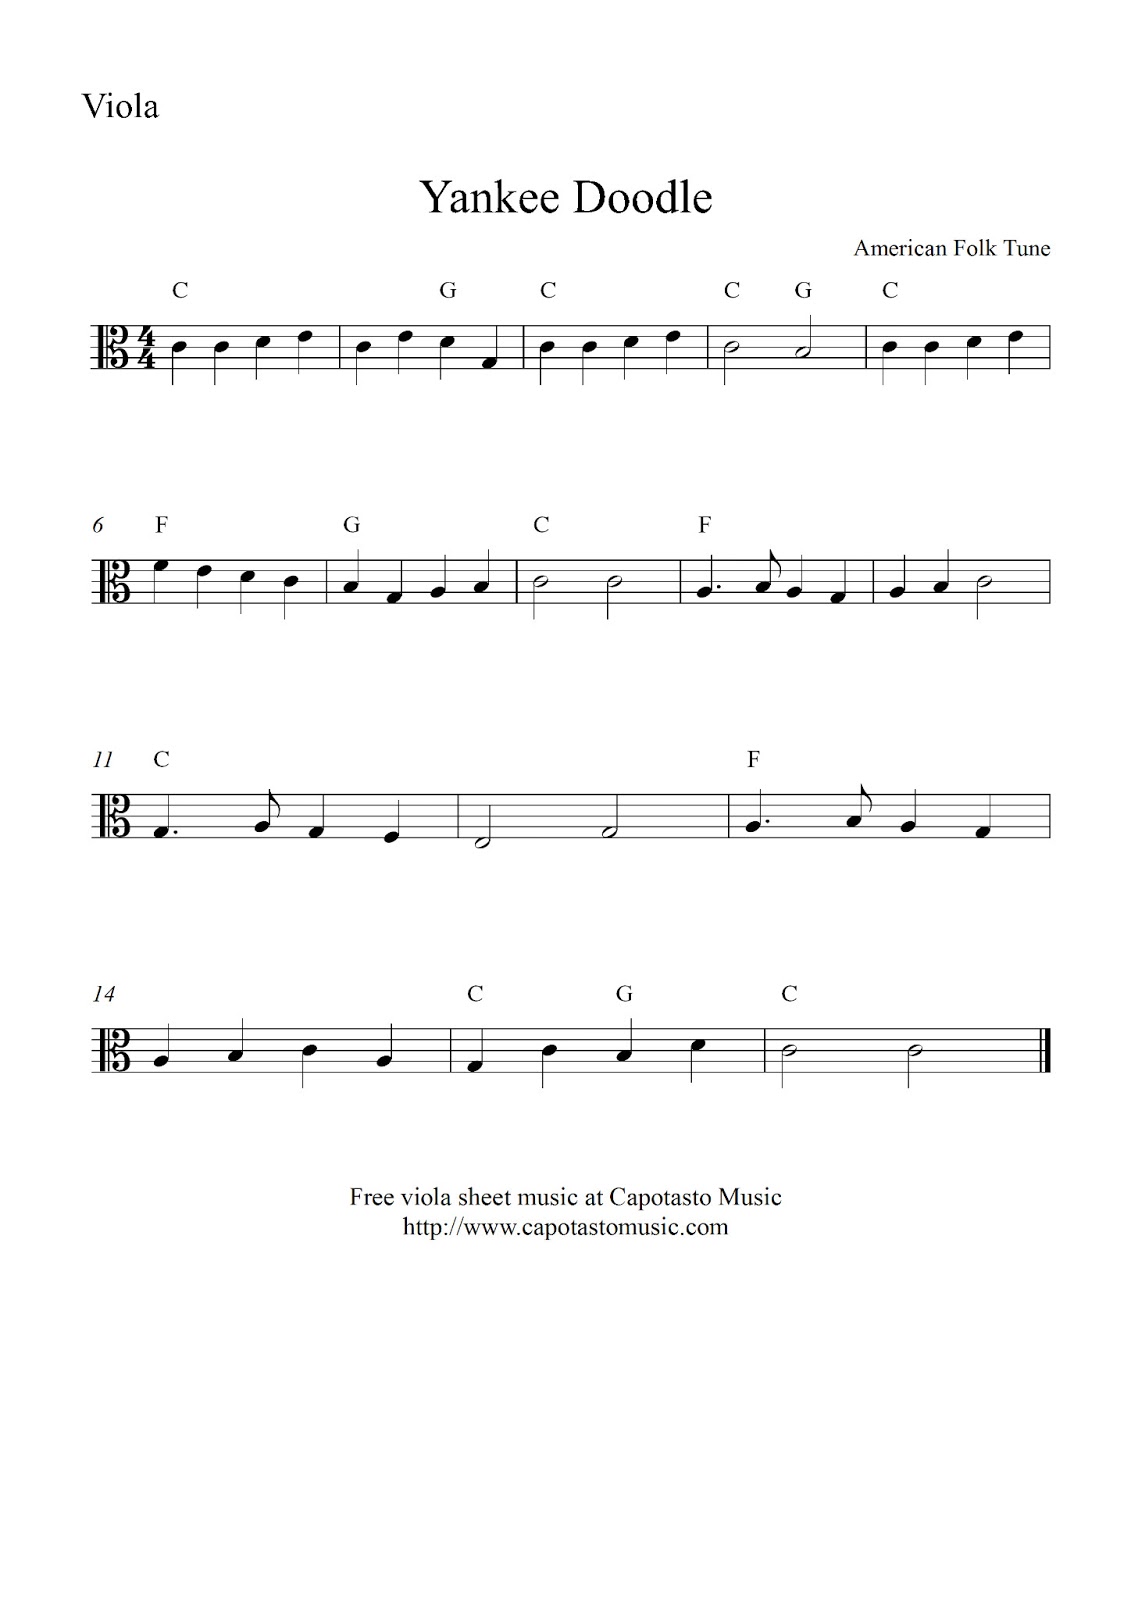 Free Printable Sheet Music Free Easy Viola Sheet Music Yankee Doodle